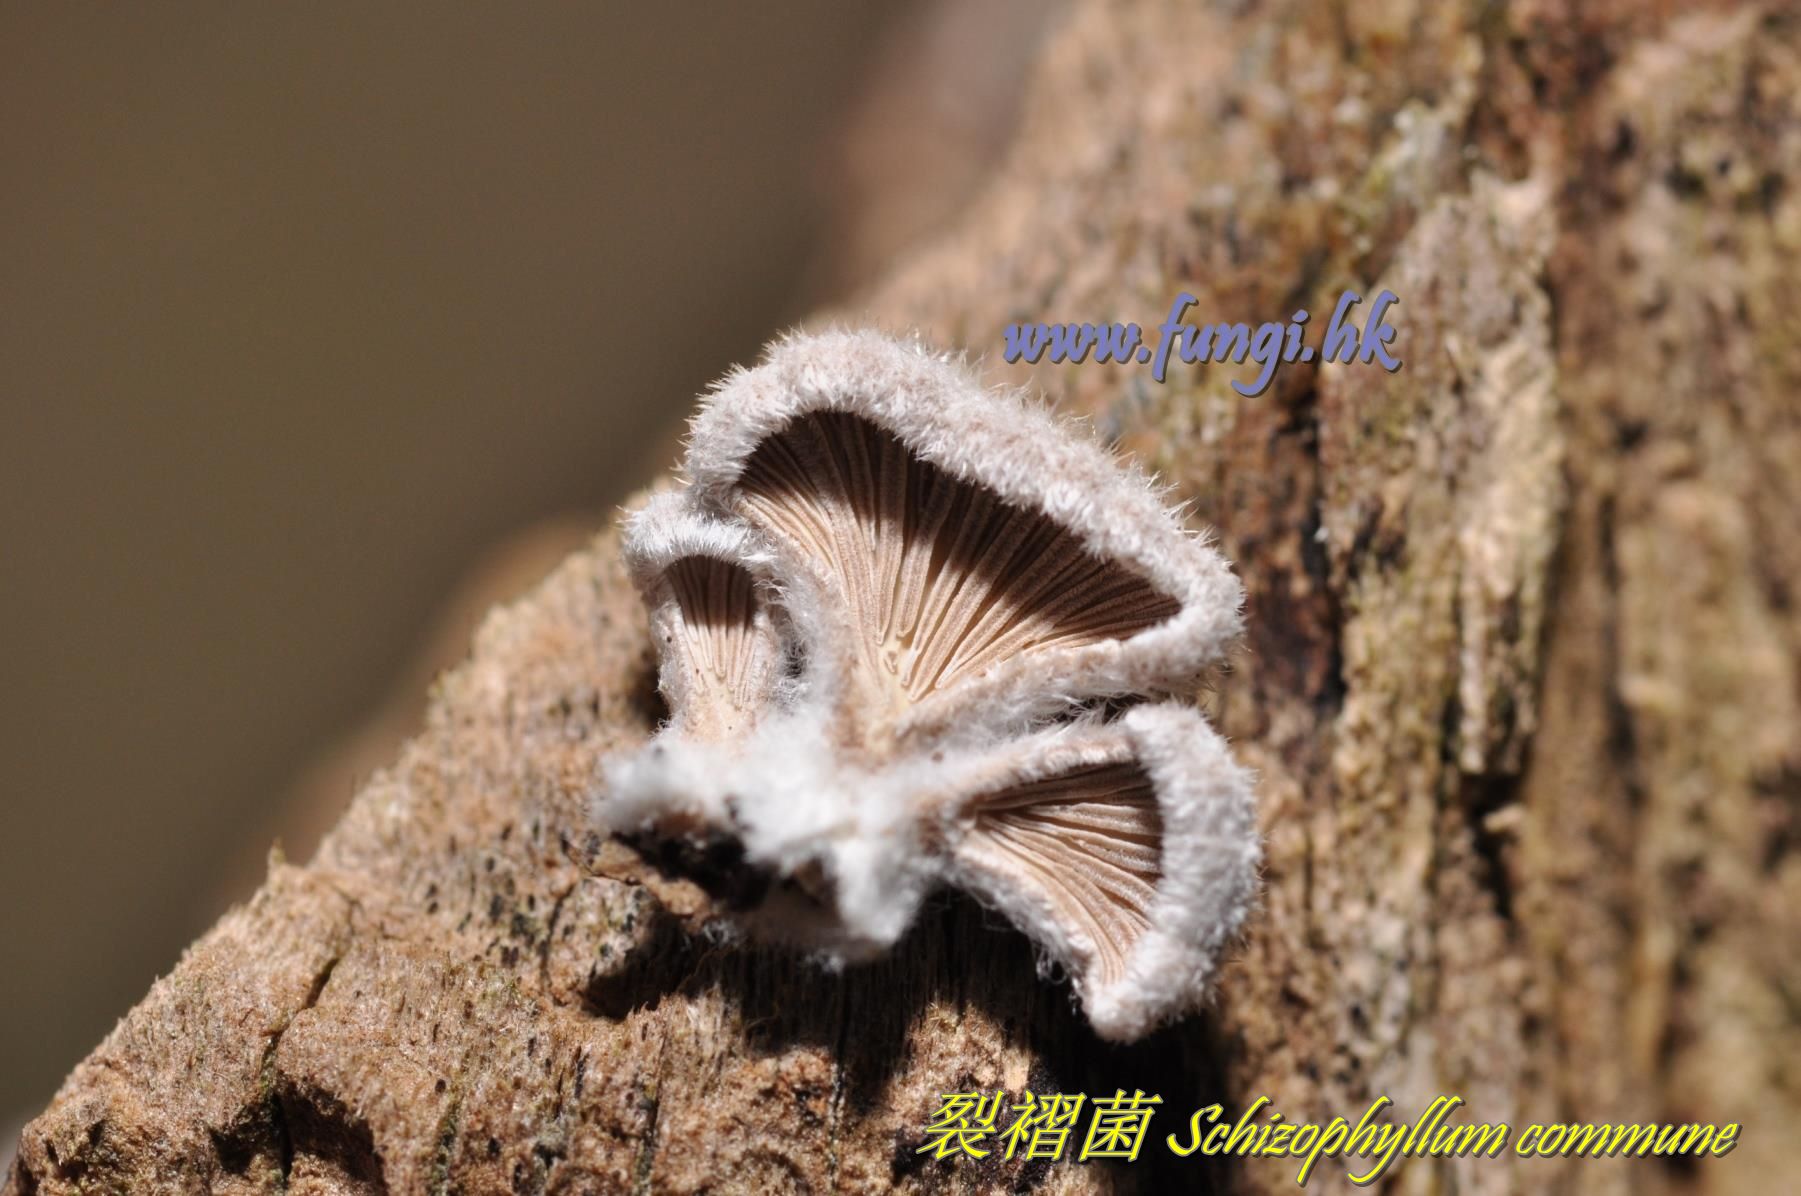 裂褶菌 Schizophyllum commune